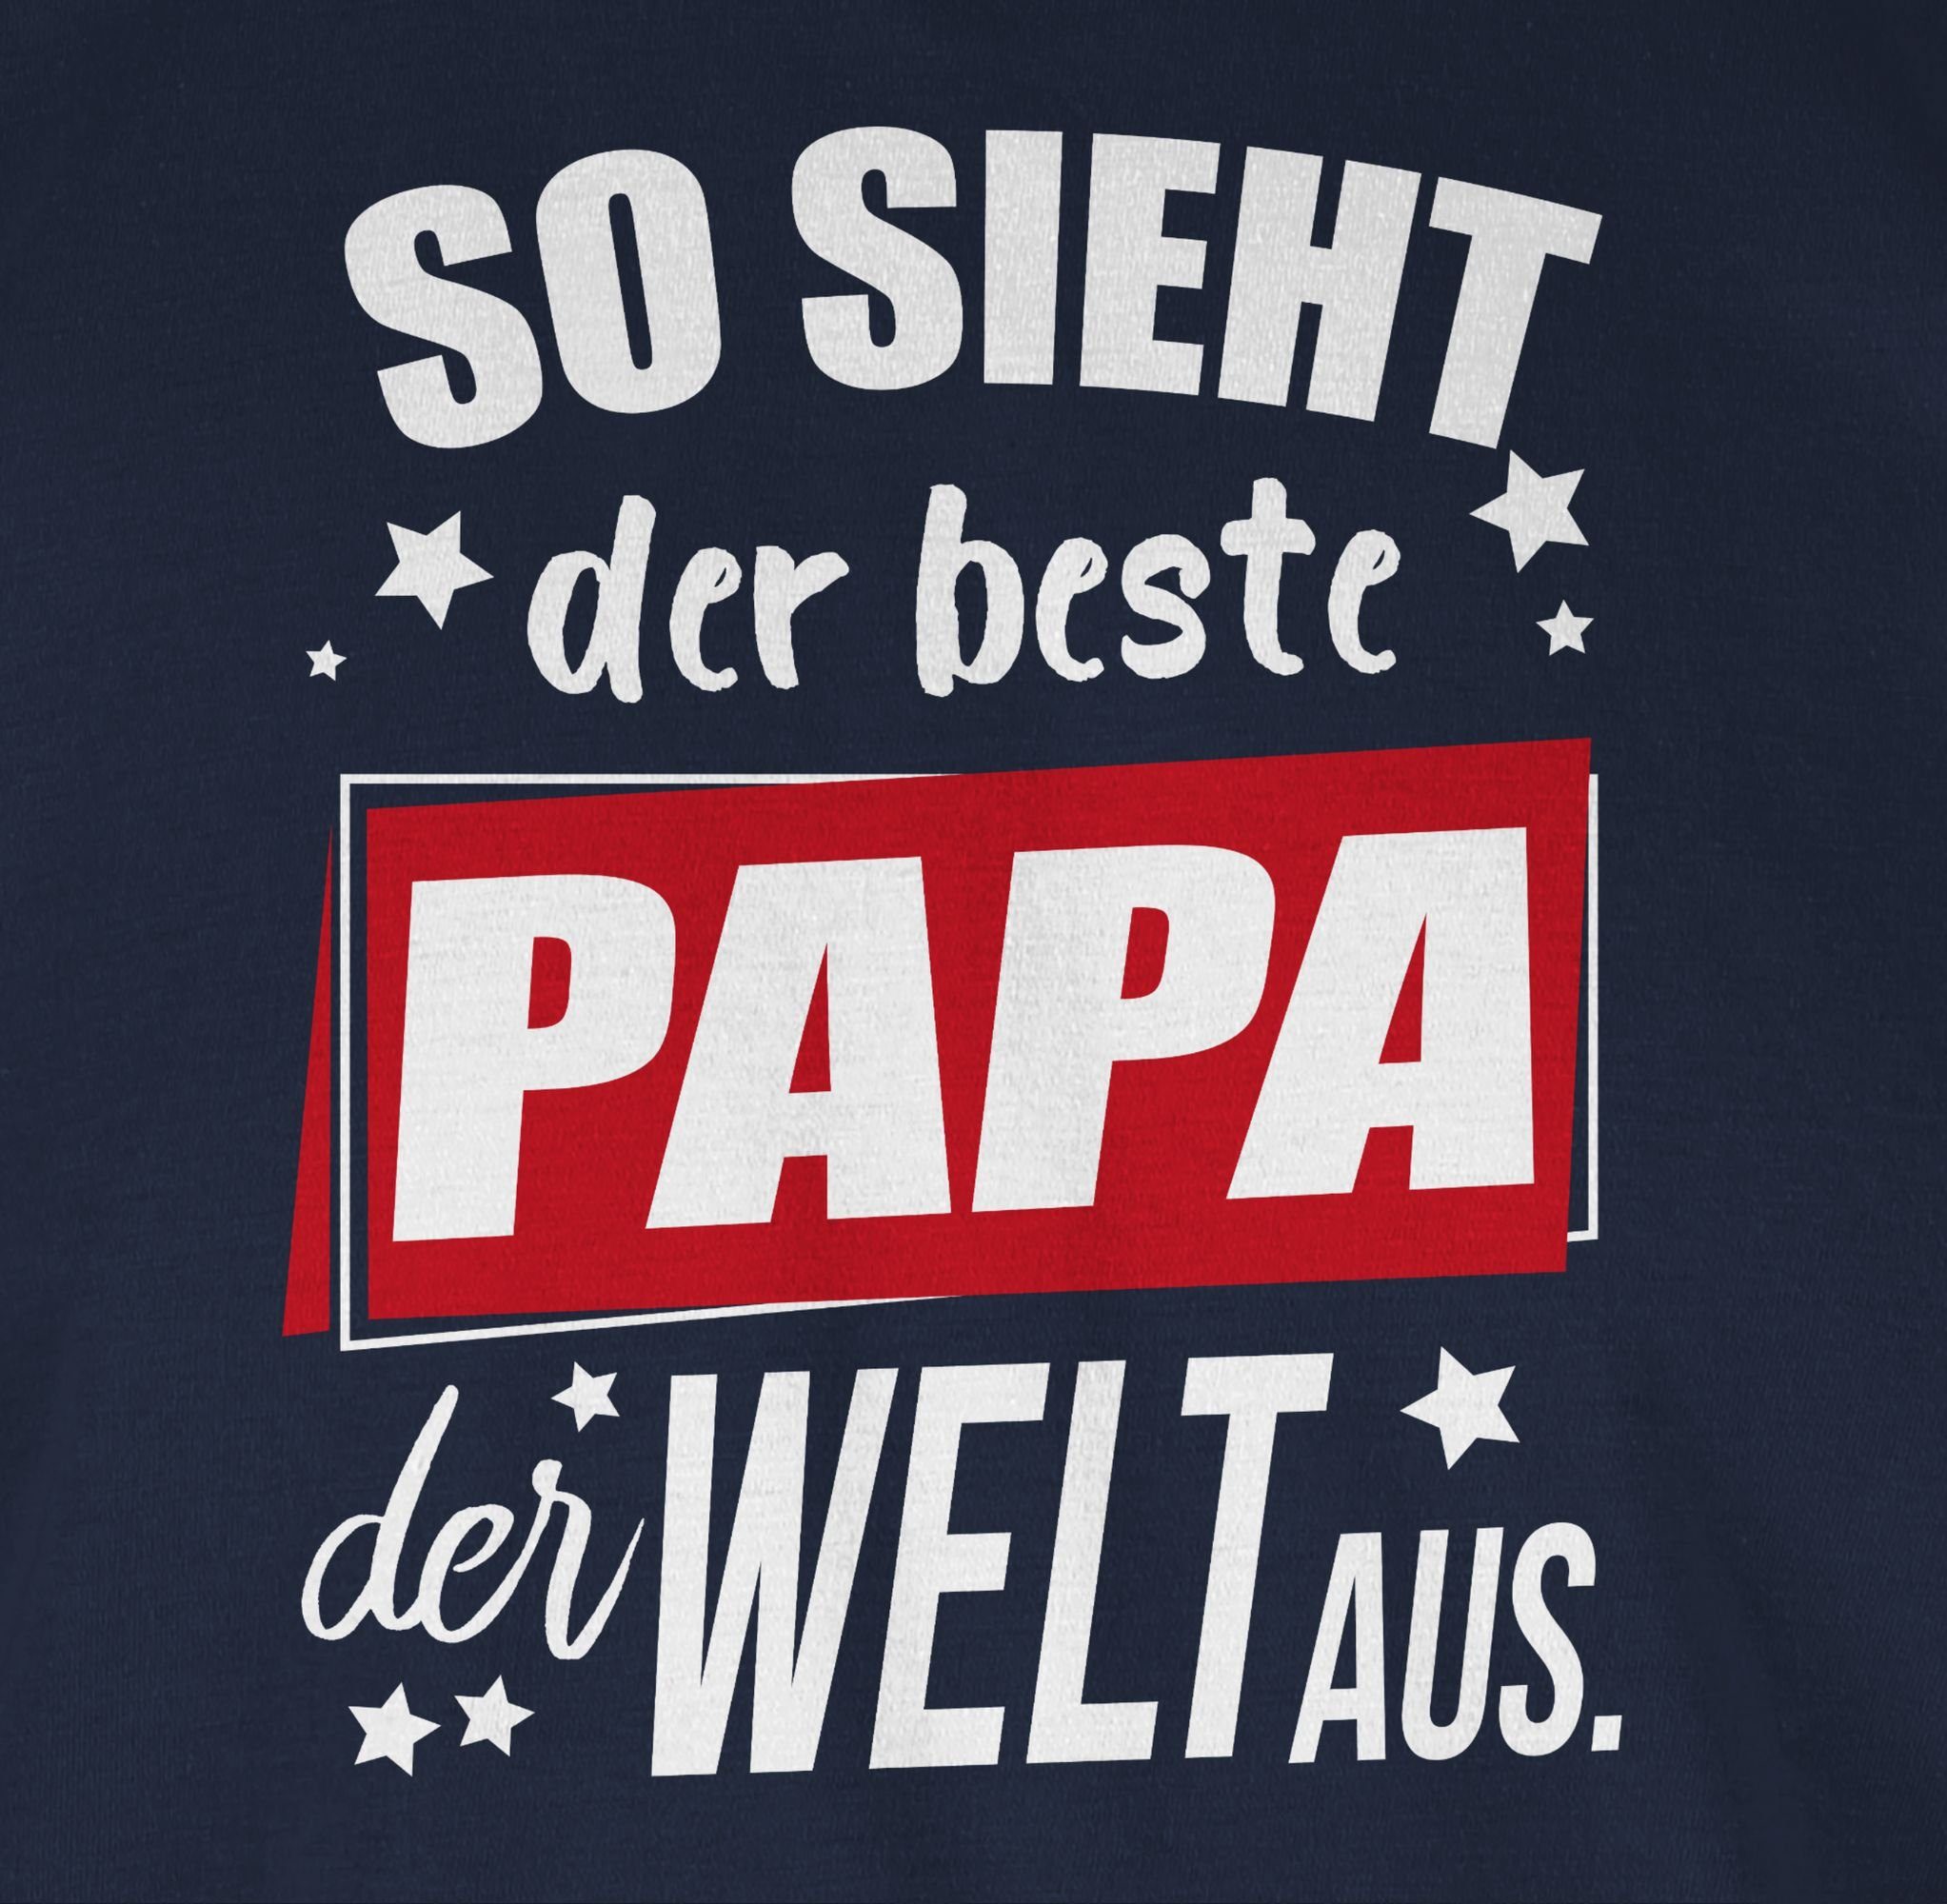 Geschenk Papa 2 der So Shirtracer Vatertag T-Shirt Welt Navy Blau beste aus. Papa für der Sterne sieht